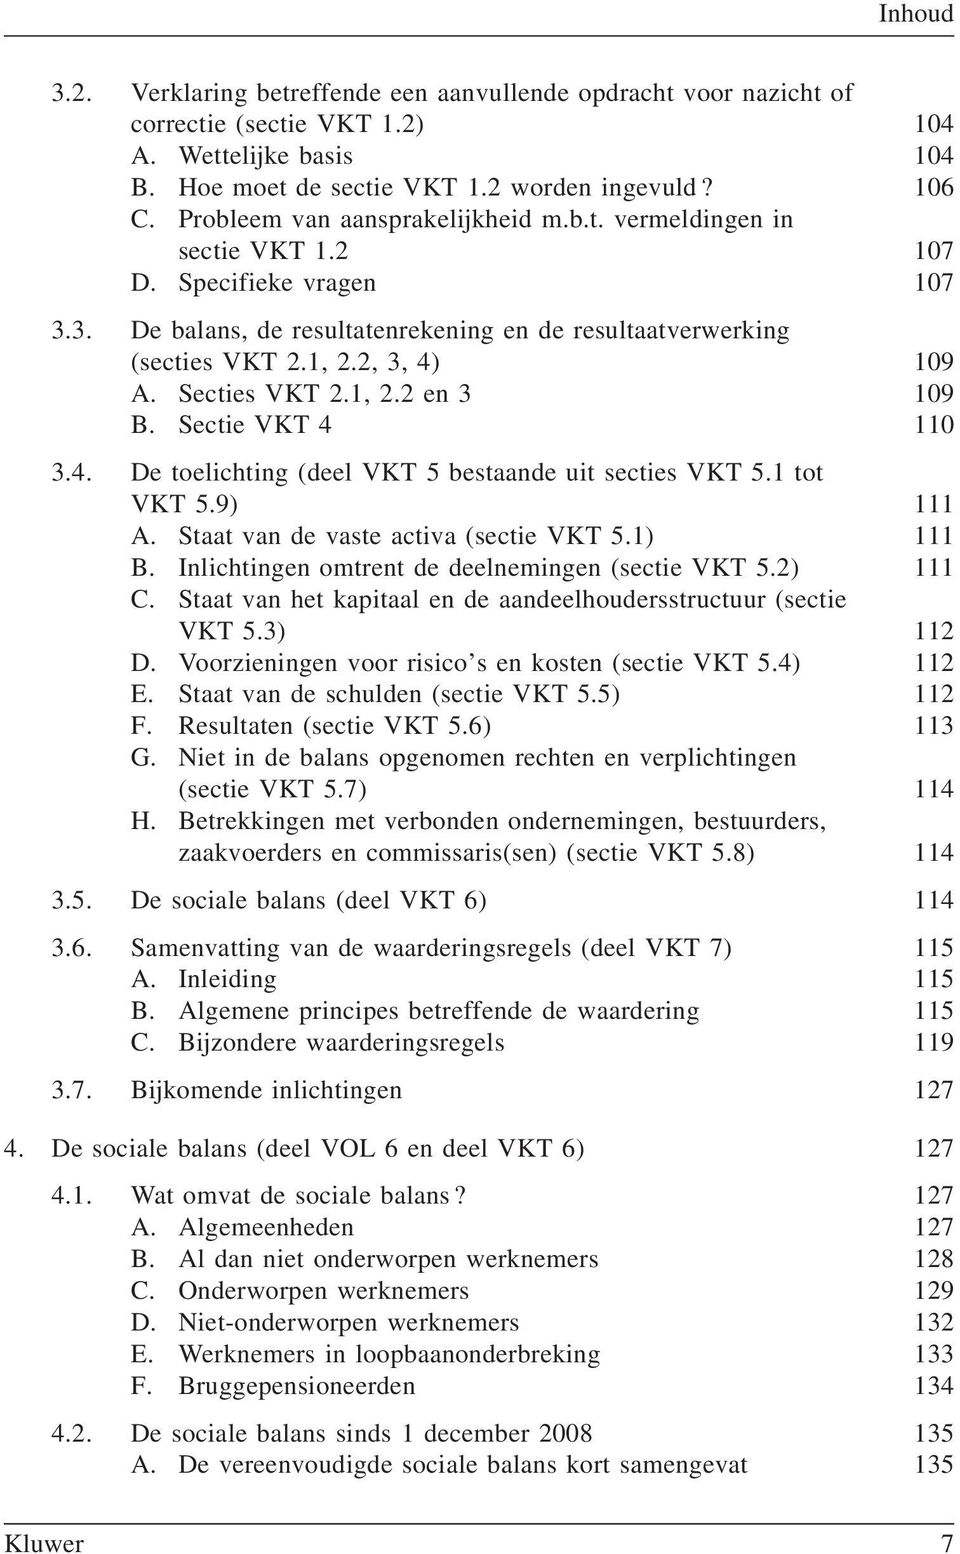 Secties VKT 2.1, 2.2 en 3 109 B. Sectie VKT 4 110 3.4. De toelichting (deel VKT 5 bestaande uit secties VKT 5.1 tot VKT 5.9) 111 A. Staat van de vaste activa (sectie VKT 5.1) 111 B.